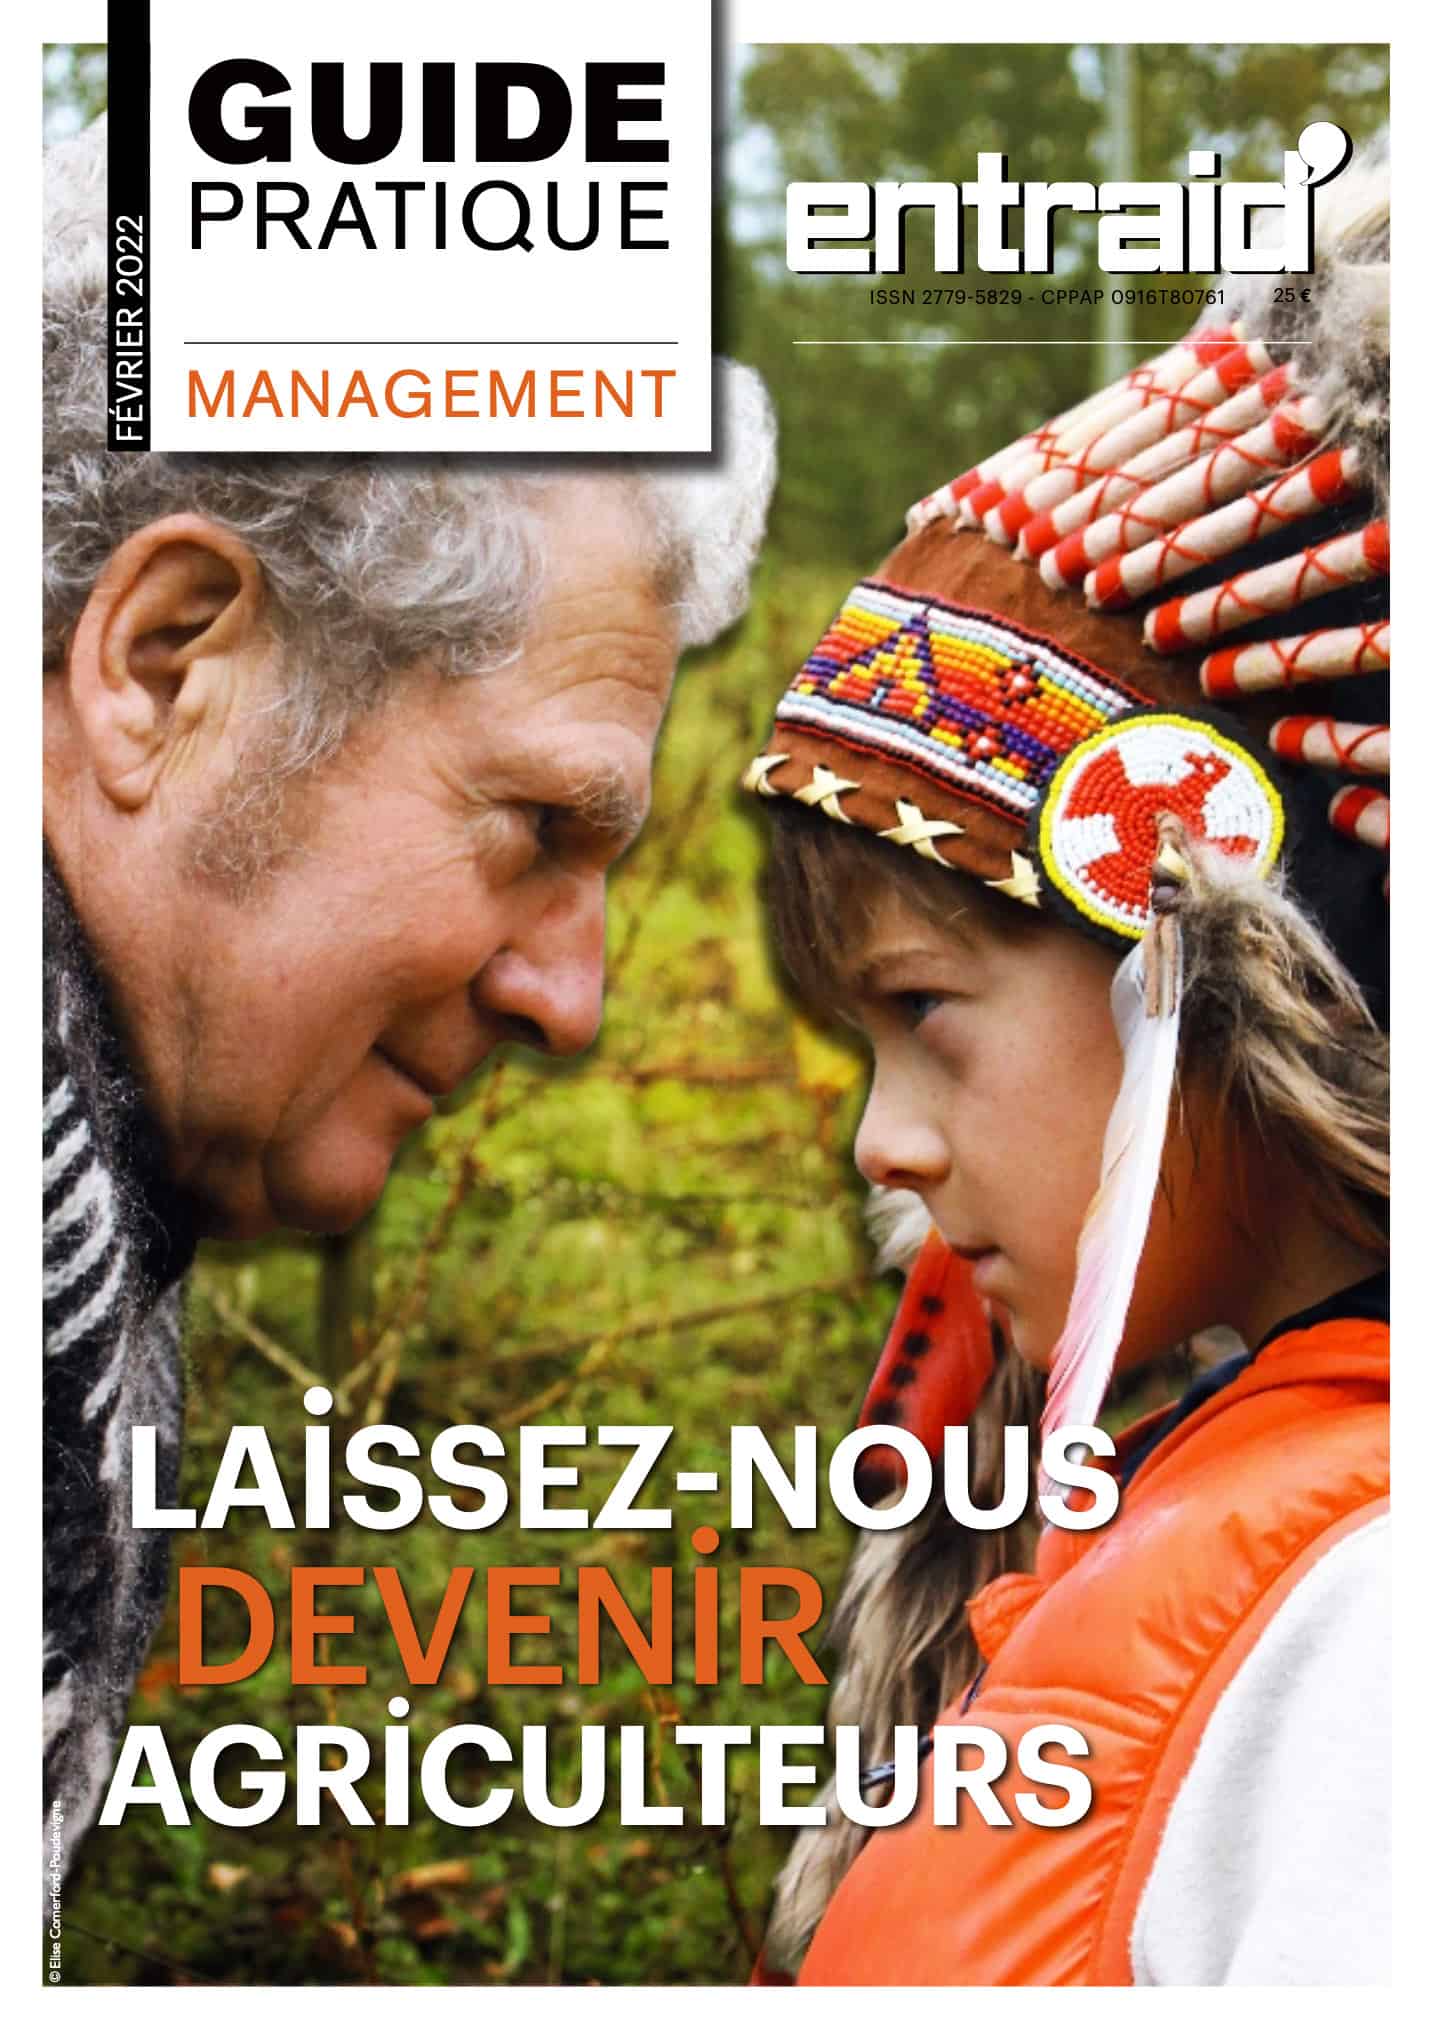 couverture magazine guide pratique management entraid